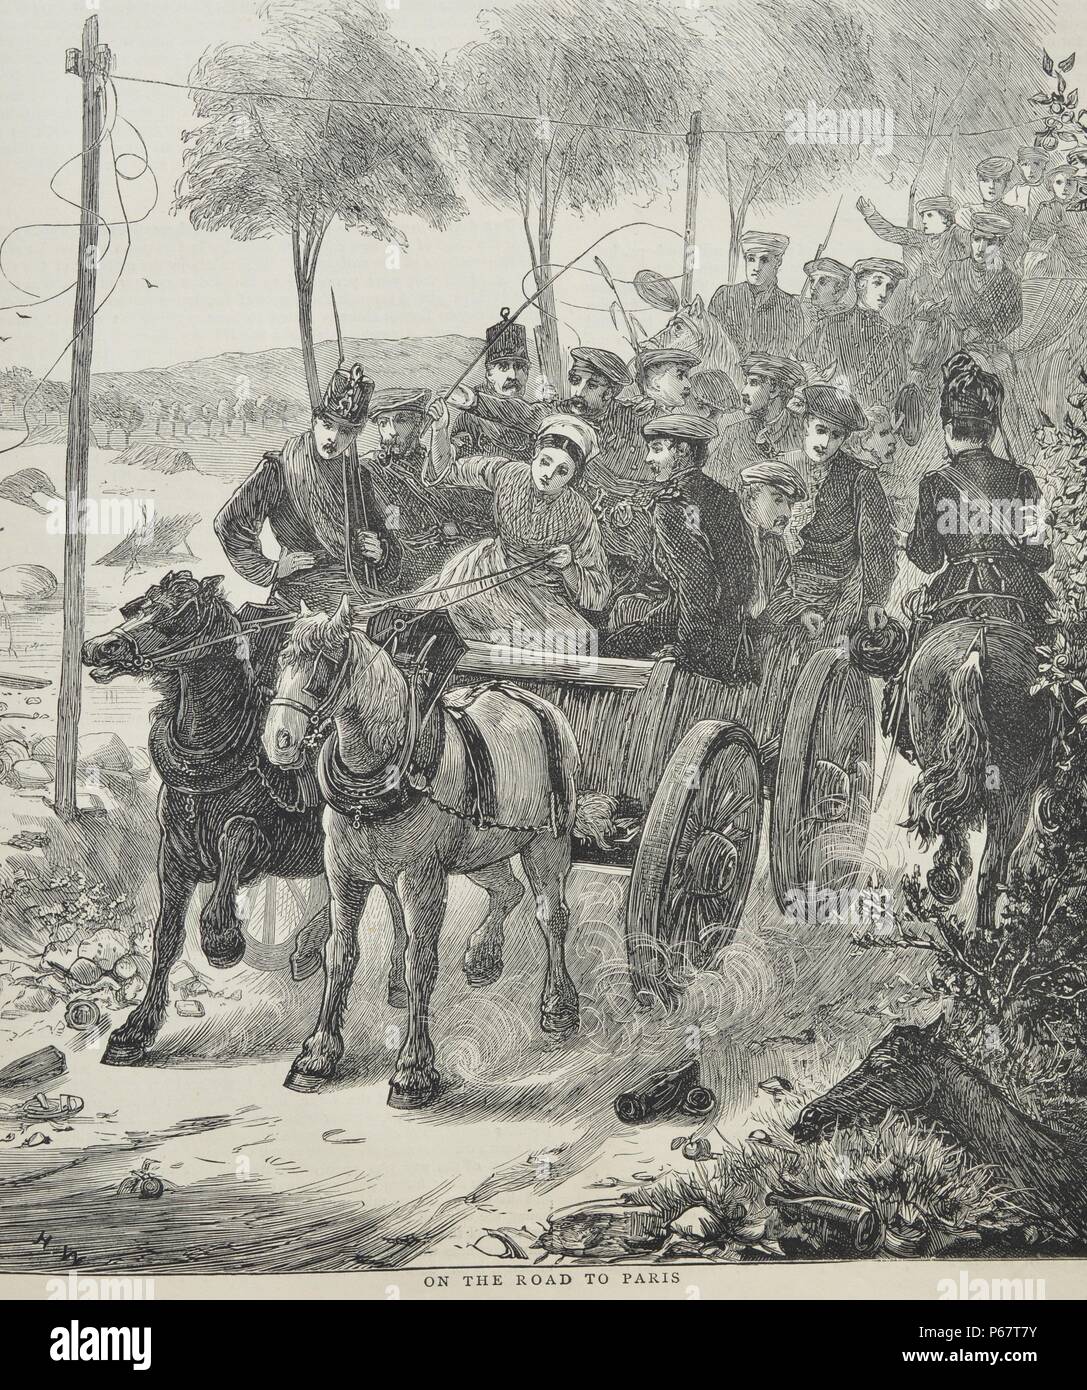 Grabado representando a los pasajeros en el camino a París. Fecha 1870 Foto de stock